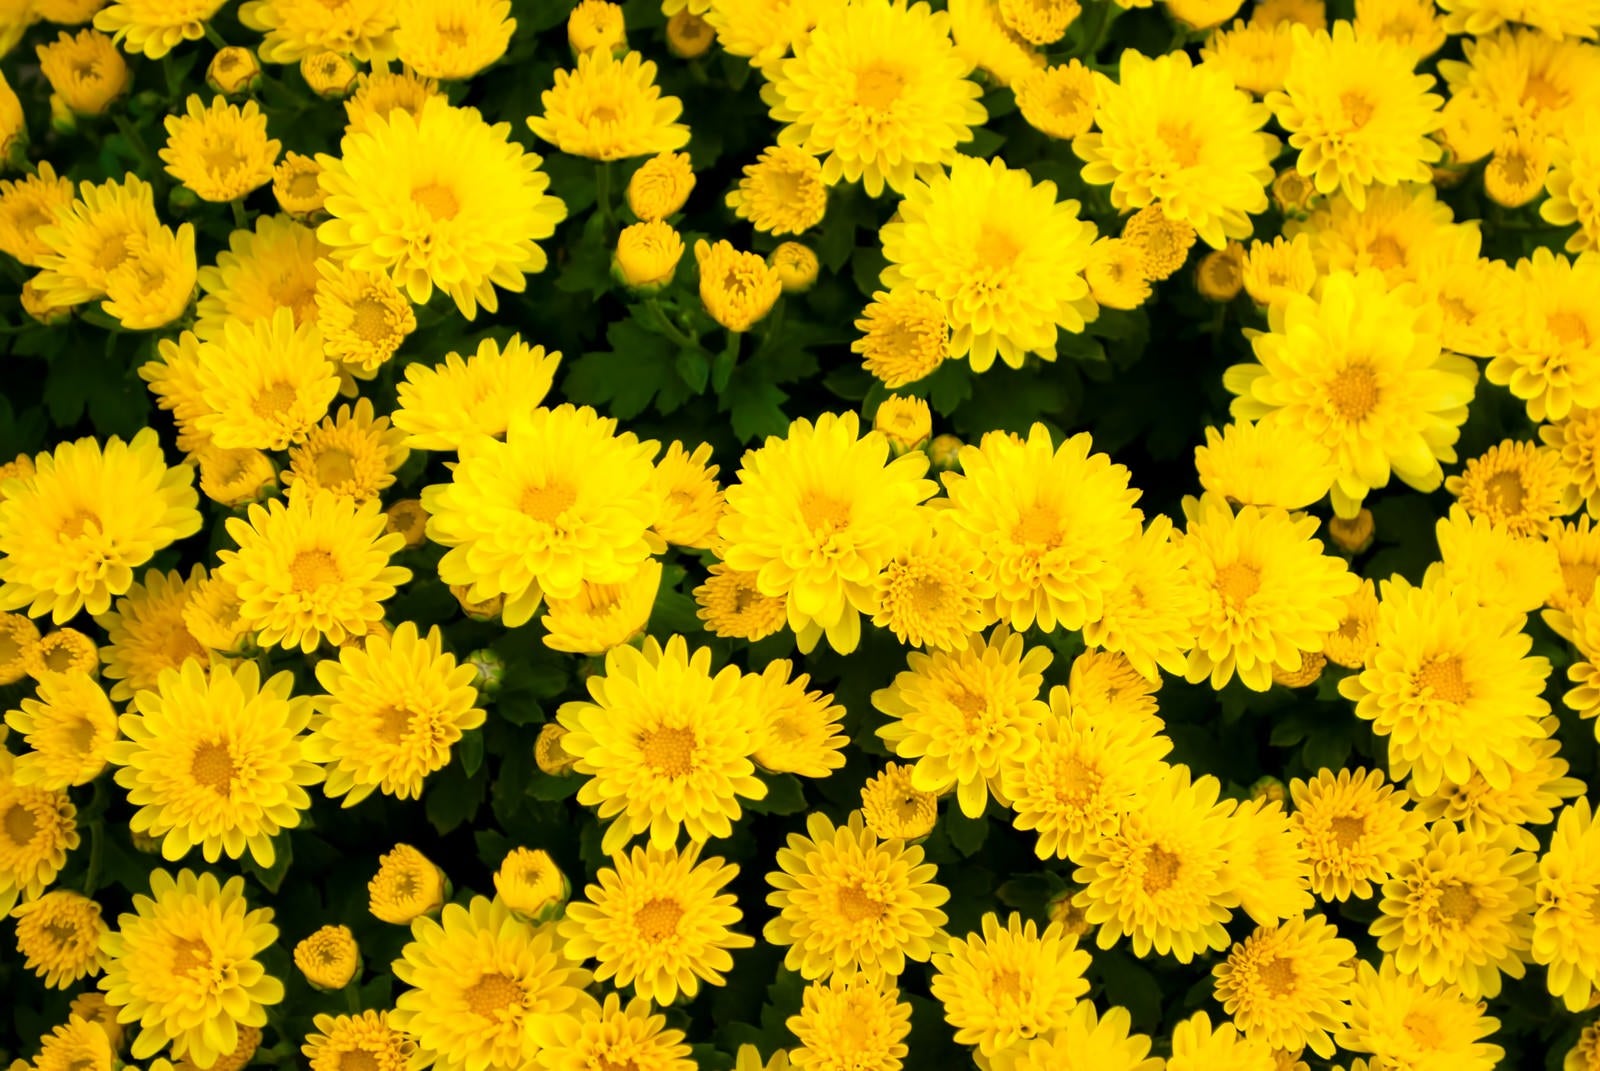 「黄色い花のテクスチャー」の写真